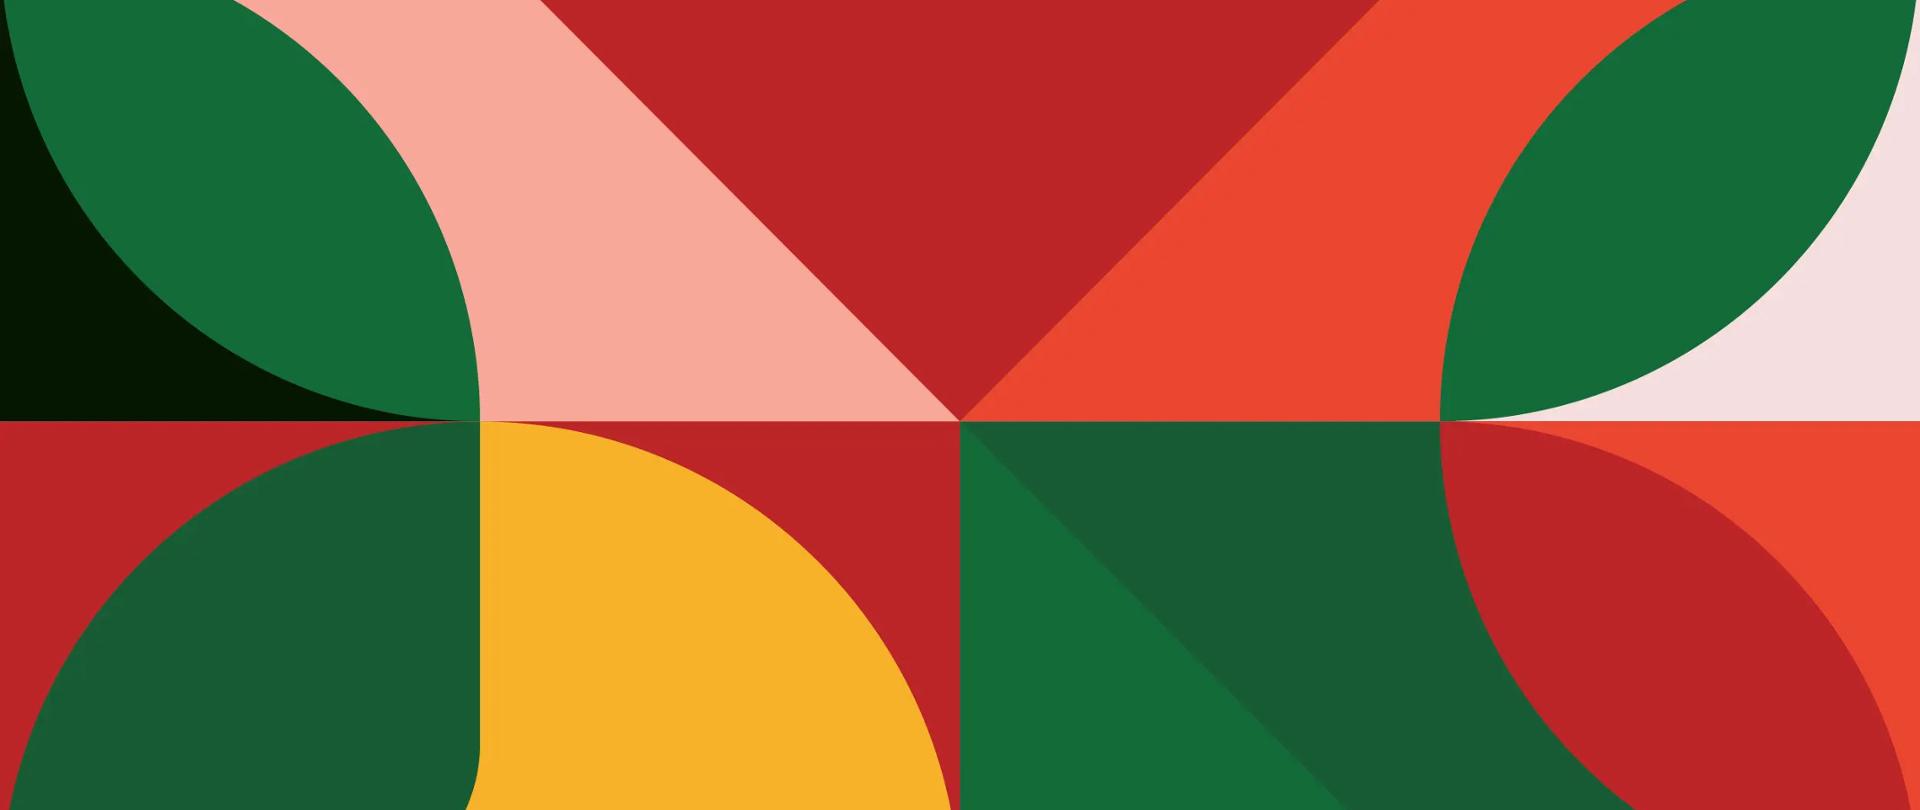 Grafika przedstawiająca geometryczne różnorodne kształty przywołujące podobieństwo do wzorów w kalejdoskopie. Głównymi kolorami kształtów są: czerwony, zielony i żółty.